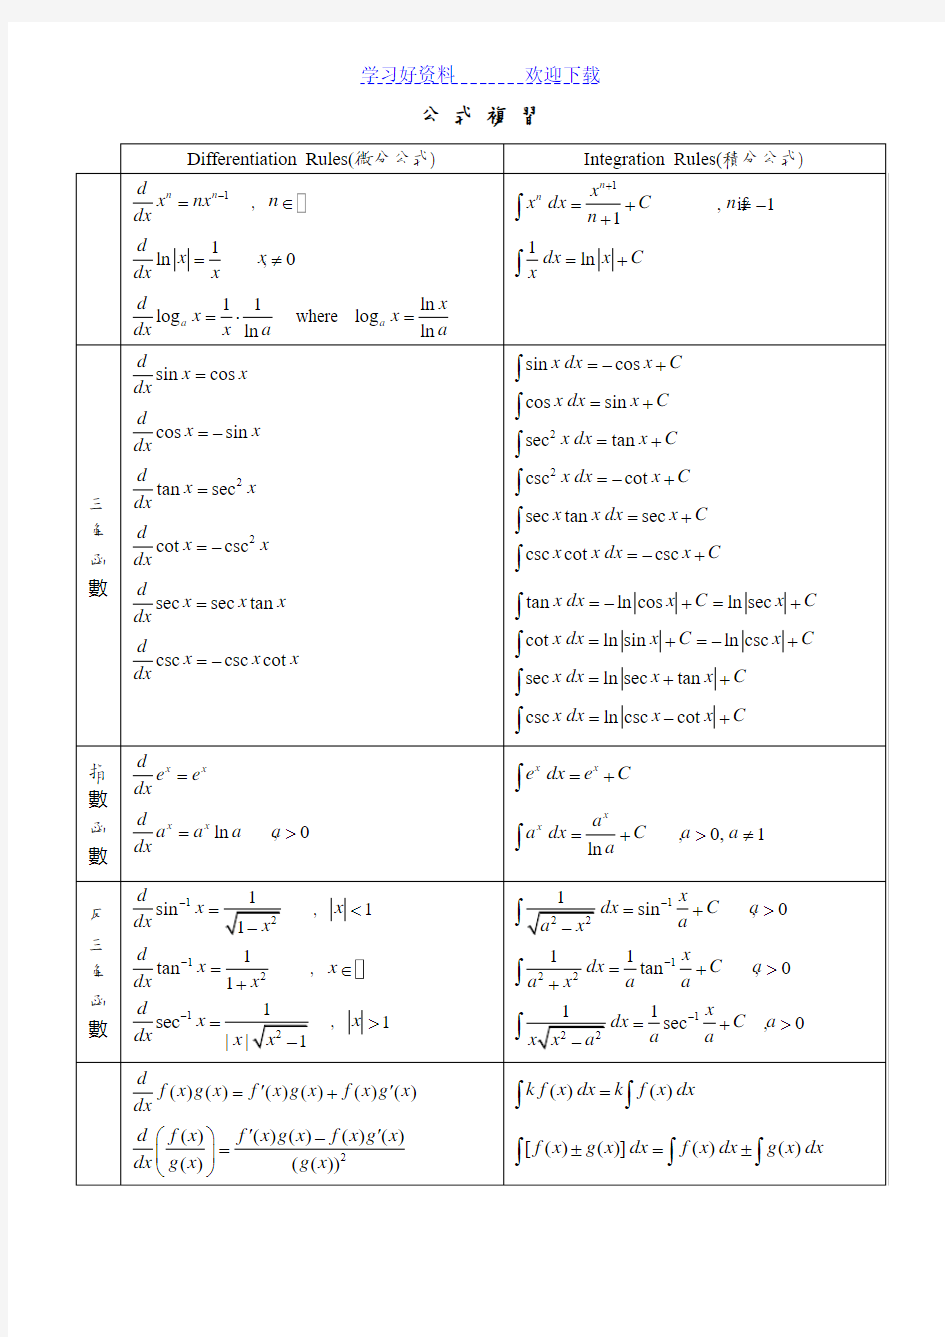 微积分公式复习表 (三角函数,指数函数,反三角函数)(微分公式)(积分公式)